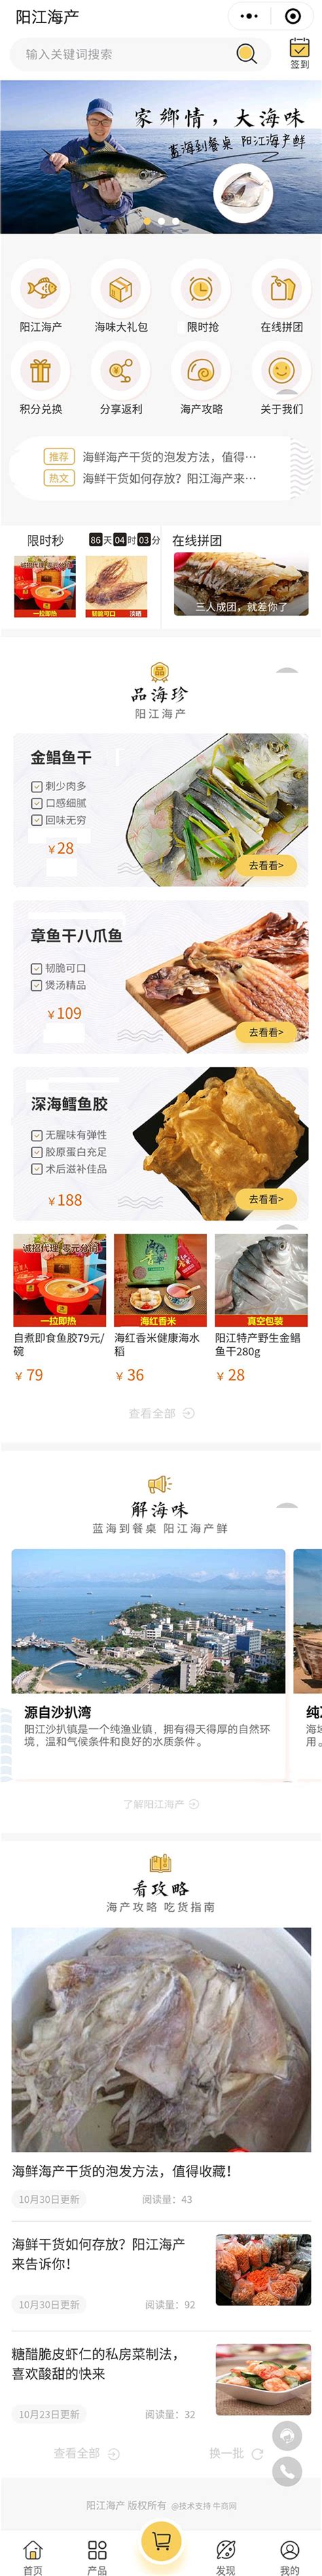 牛商网小程序案例展示-阳江海产鱼干